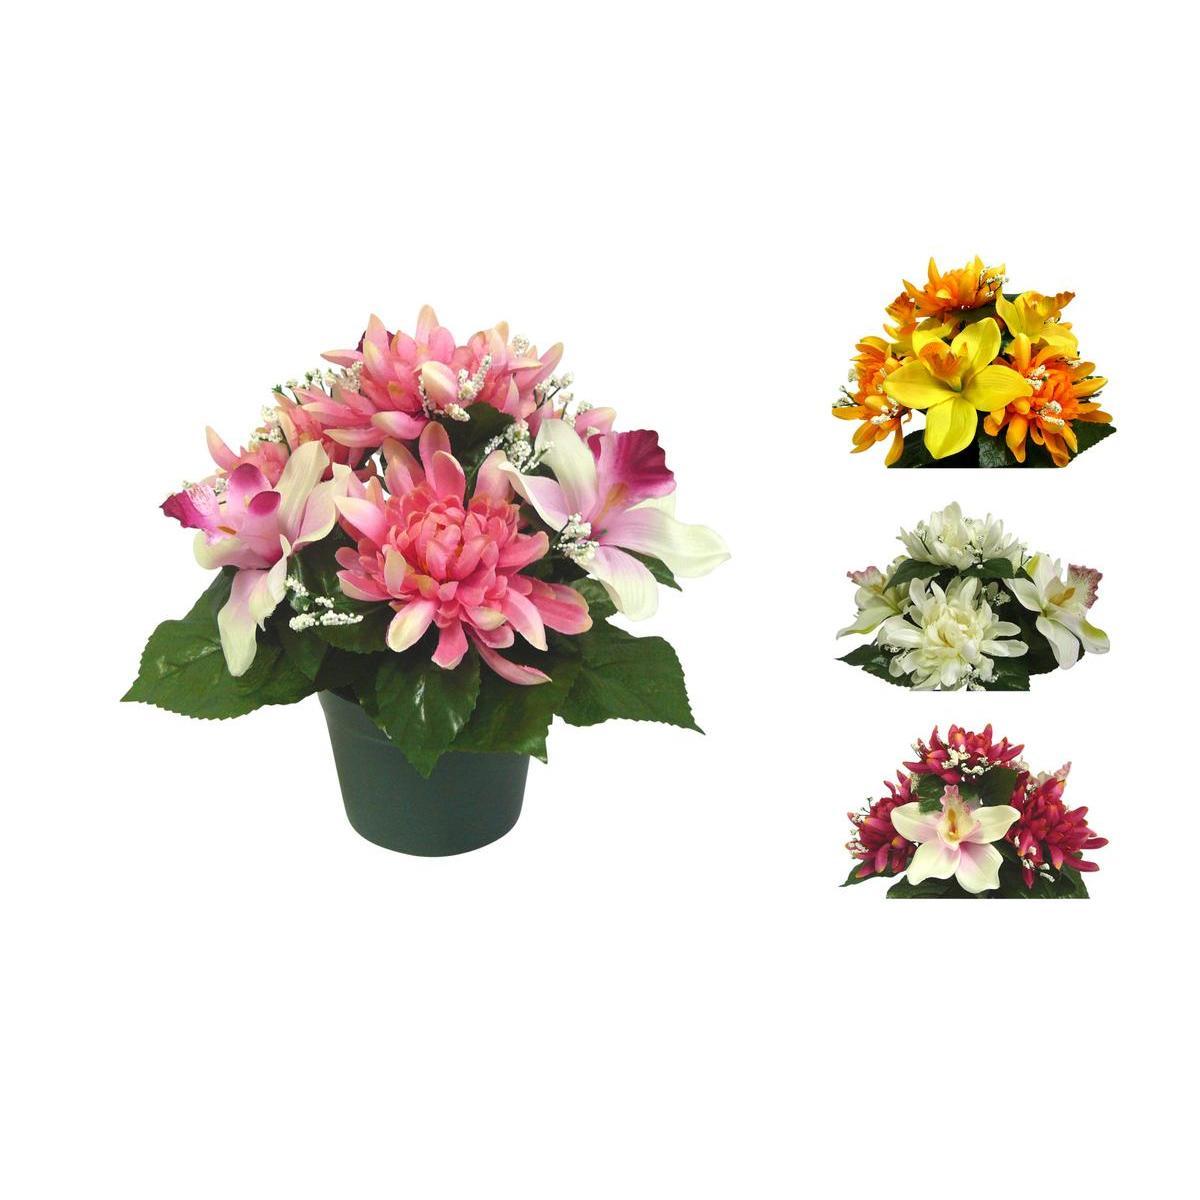 Potée d'orchidées et chrysanthèmes - Plastique - Ø 12 x H 27 cm - Différents coloris